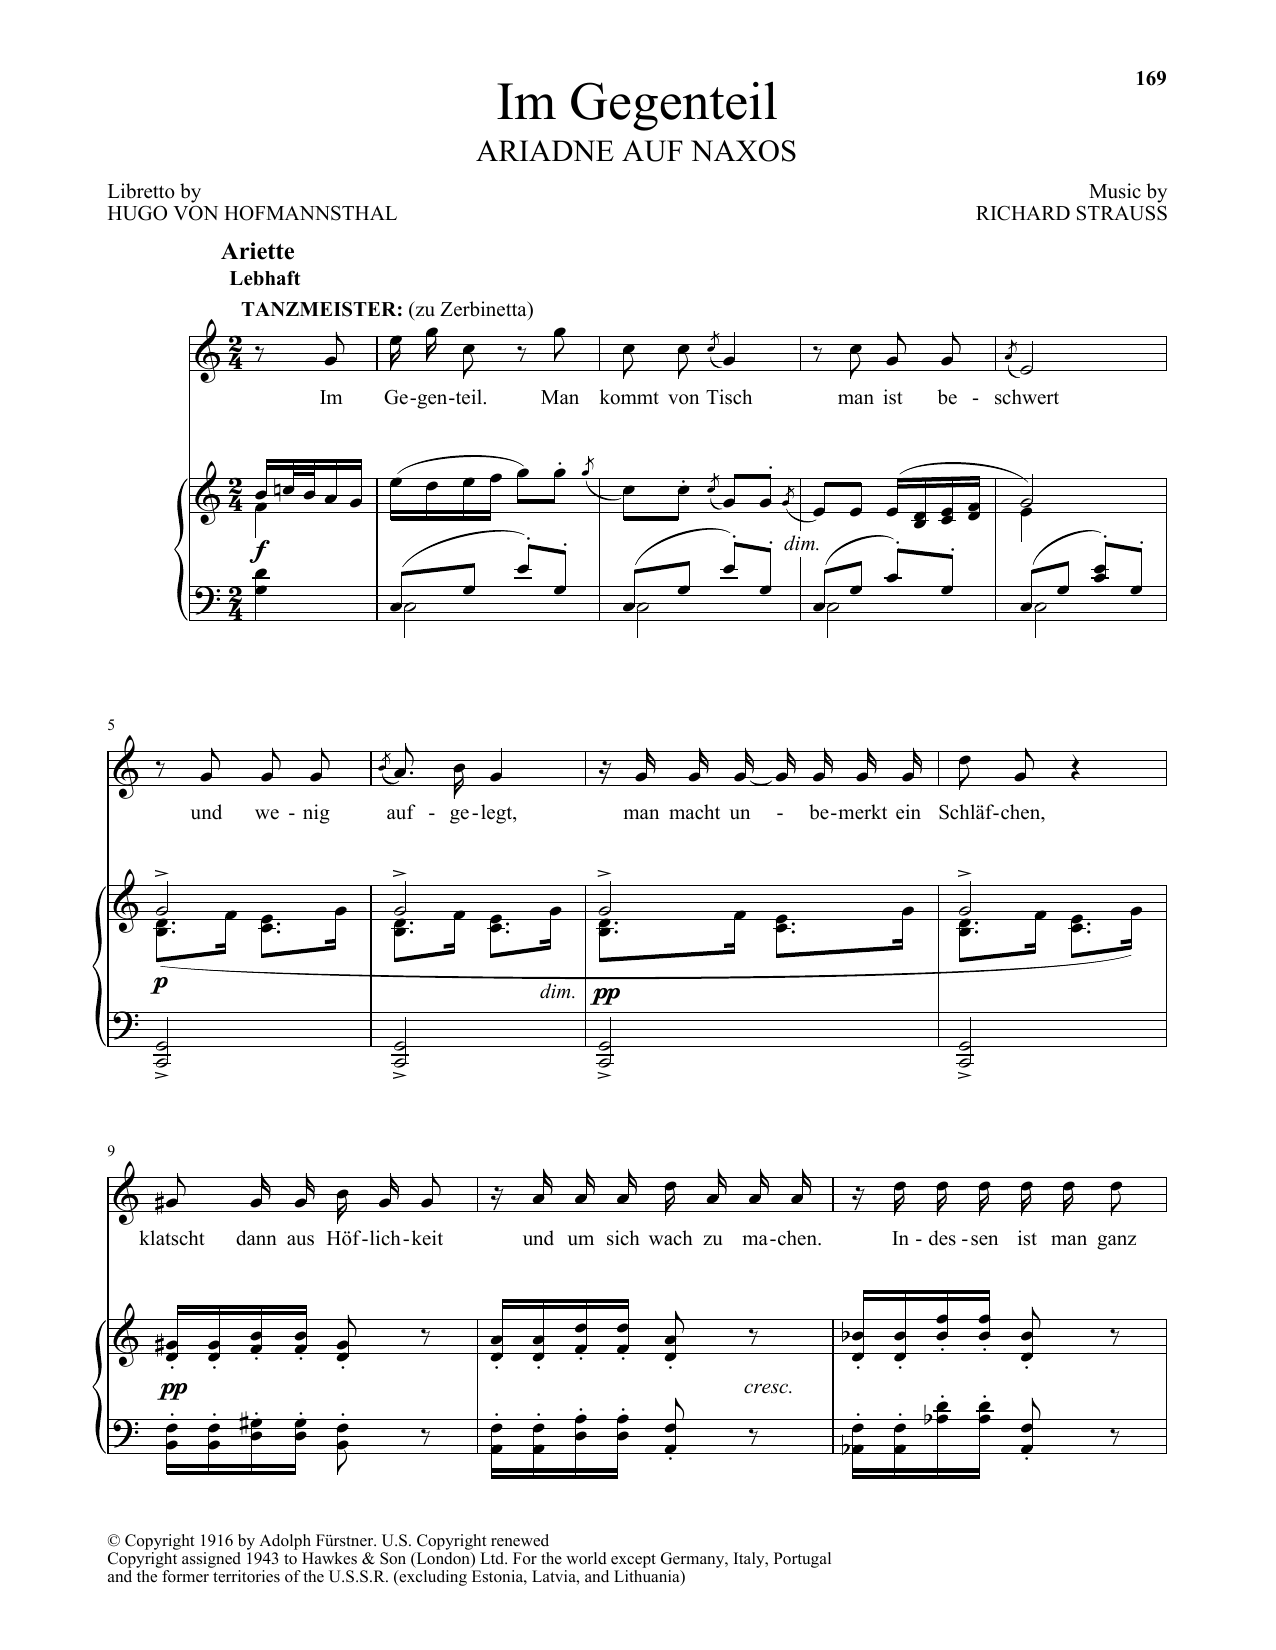 Download Richard Strauss Im Gegenteil Sheet Music